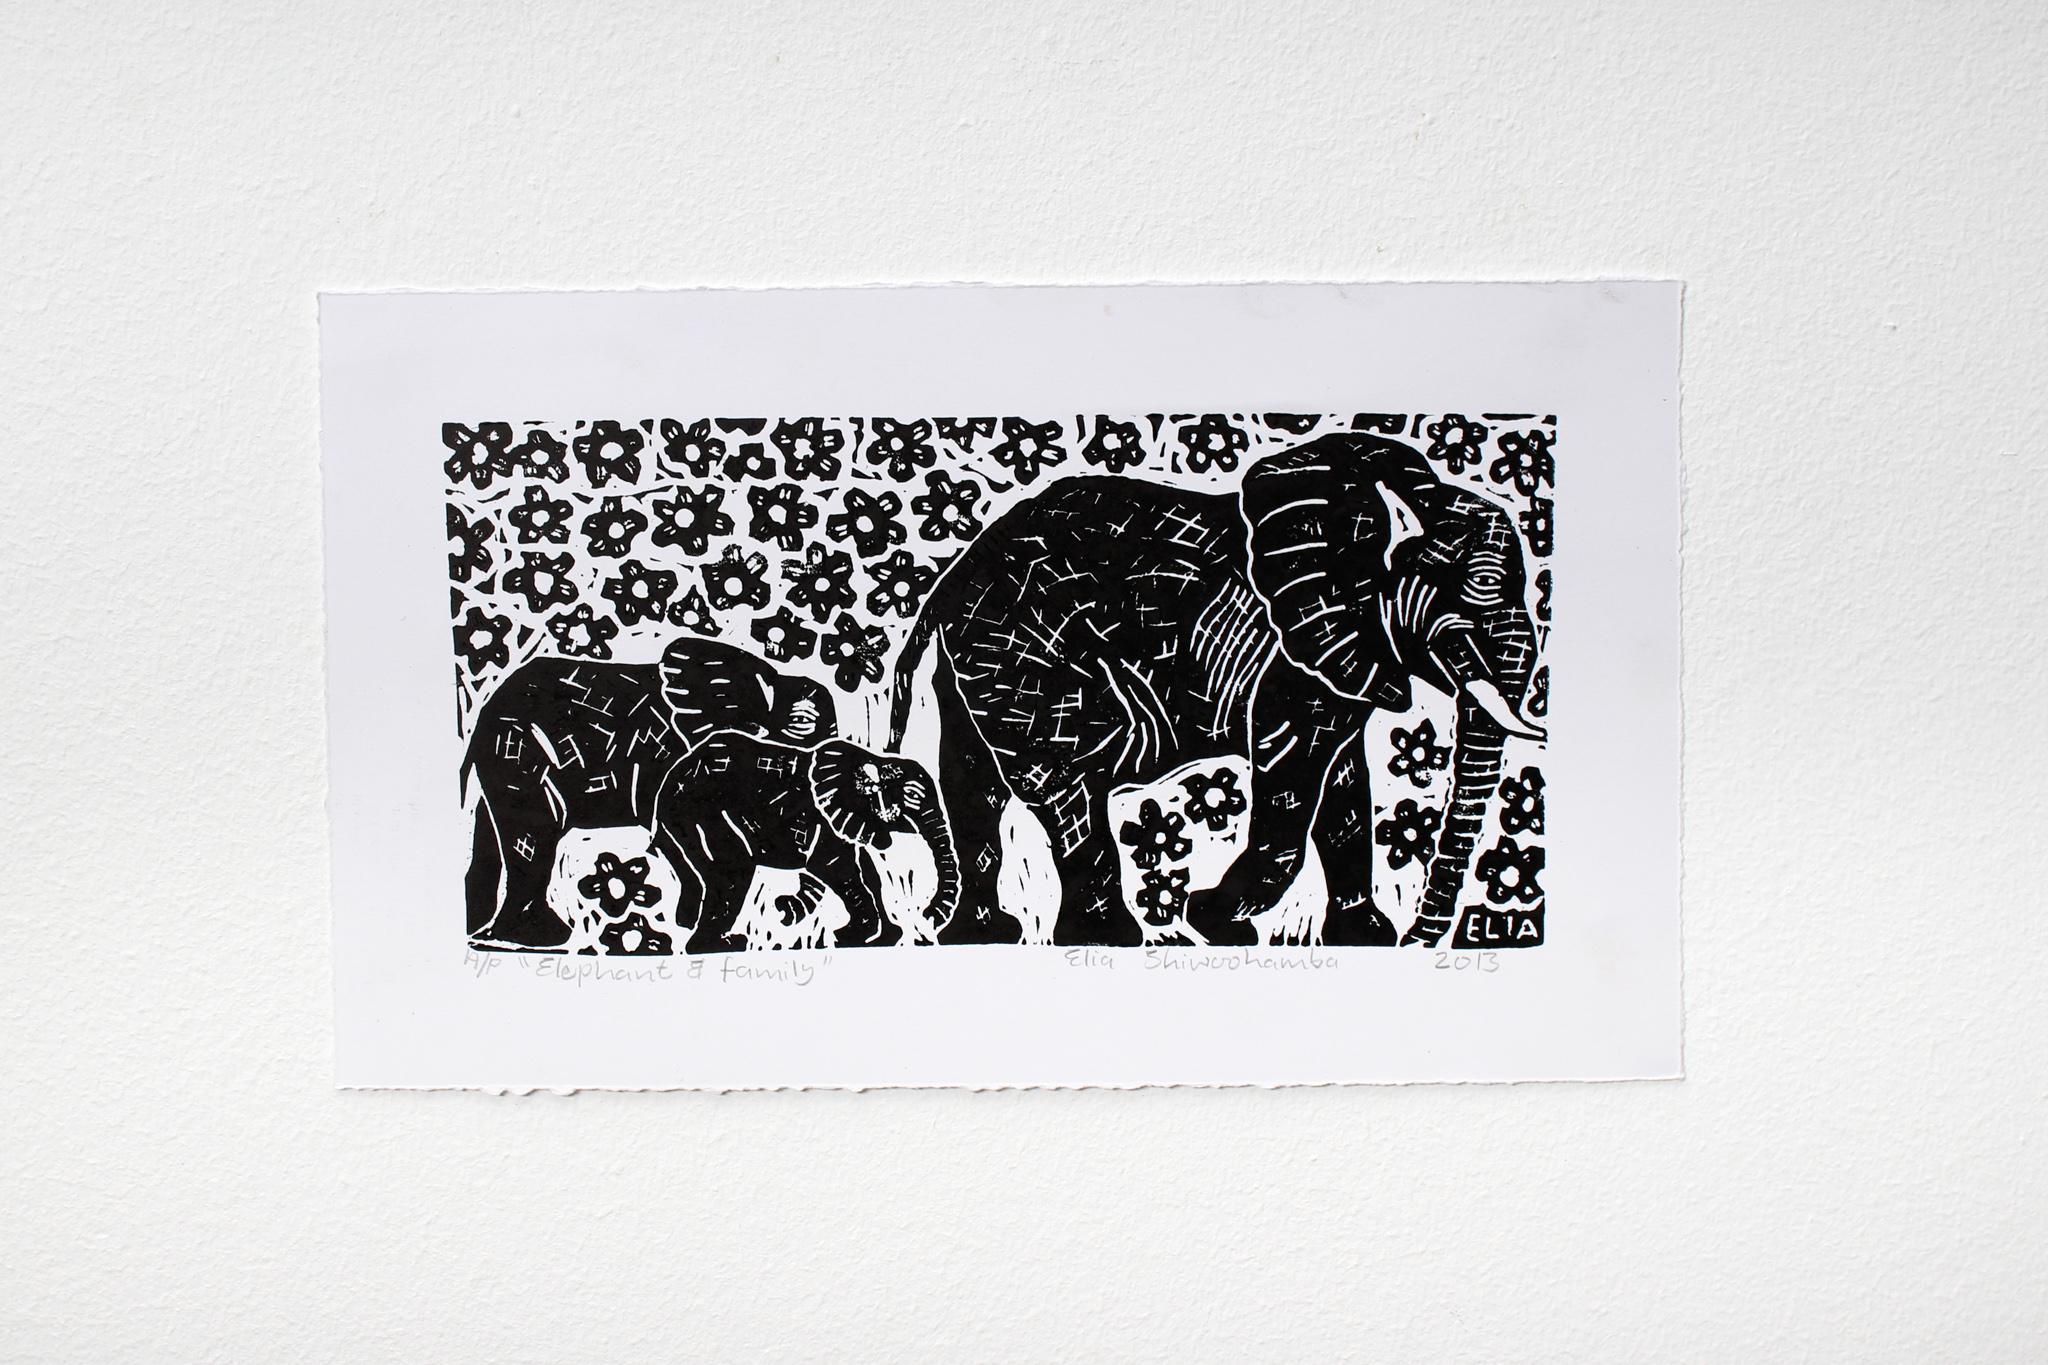 Elefant und Familie, 2013. Linoleum-Blockdruck auf Papier. Unbeschränkte Ausgabe. 

Elia Shiwoohamba wurde 1981 in Windhoek, Namibia, geboren. Im Jahr 2006 machte er seinen Abschluss am John Muafangejo Art Centre in Windhoek. Shiwoohamba ist auf